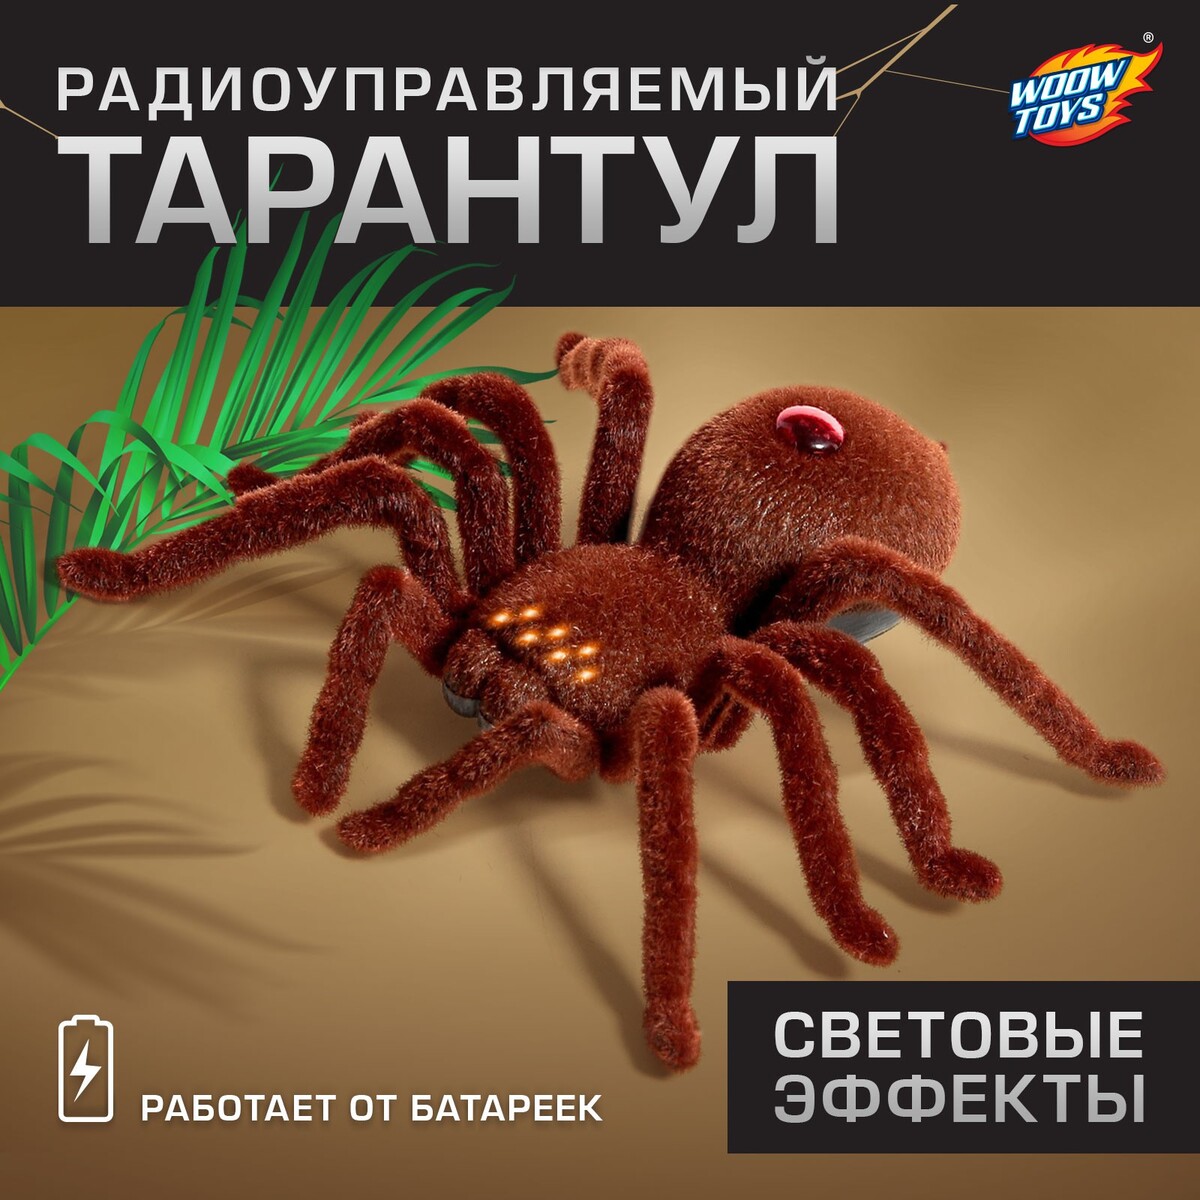 Паук радиоуправляемый интерактивная игрушка edu toys паук радиоуправляемый